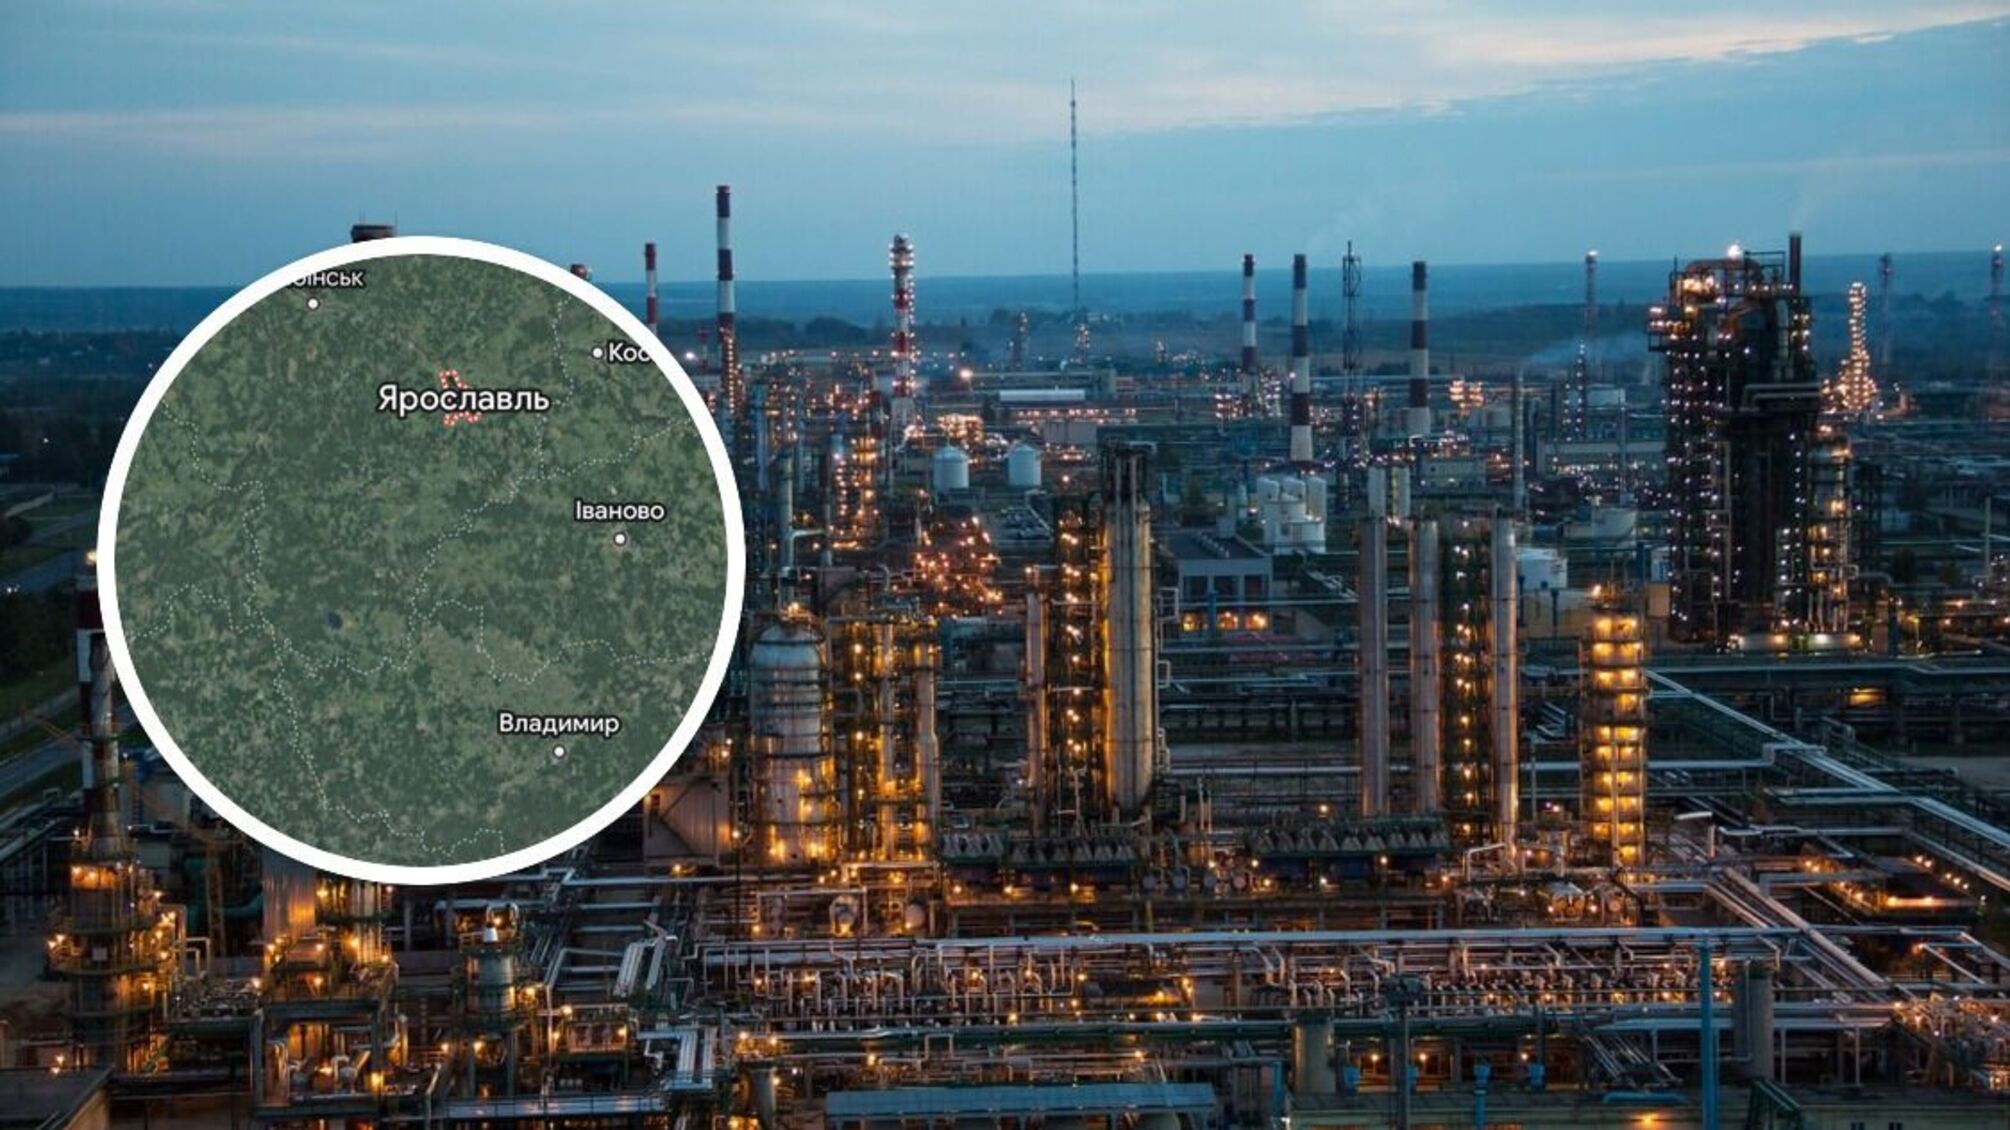 БпЛА атаковал нефтеперерабатывающий завод 'Славнефть-ЯНОС', что в Ярославле